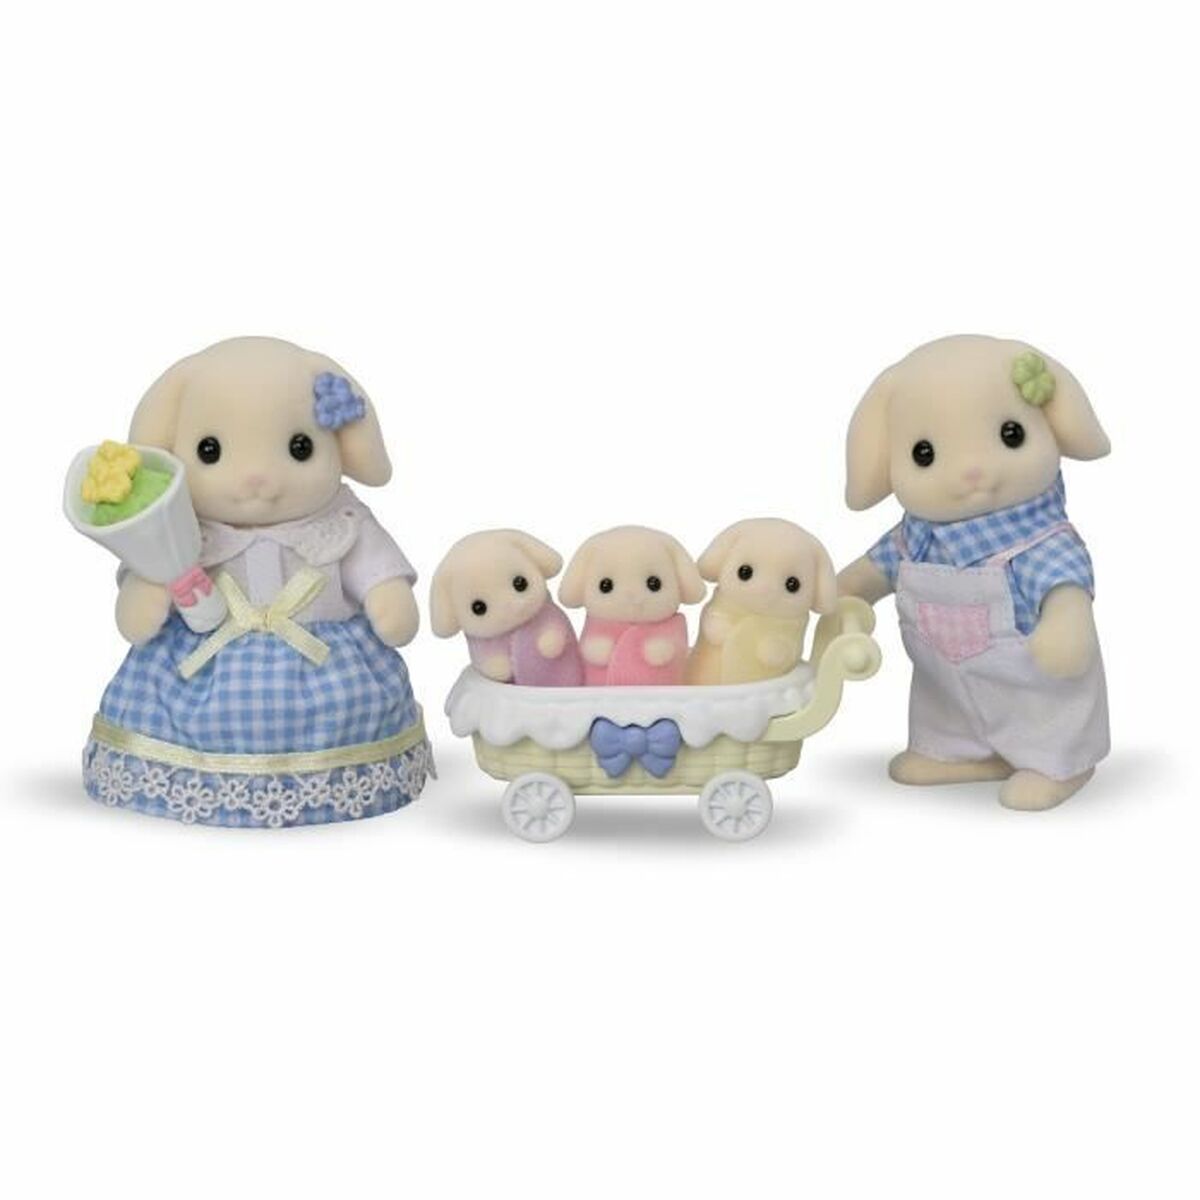 Zubehör für Puppenhaus Sylvanian Families 5735 Flora Rabbit family